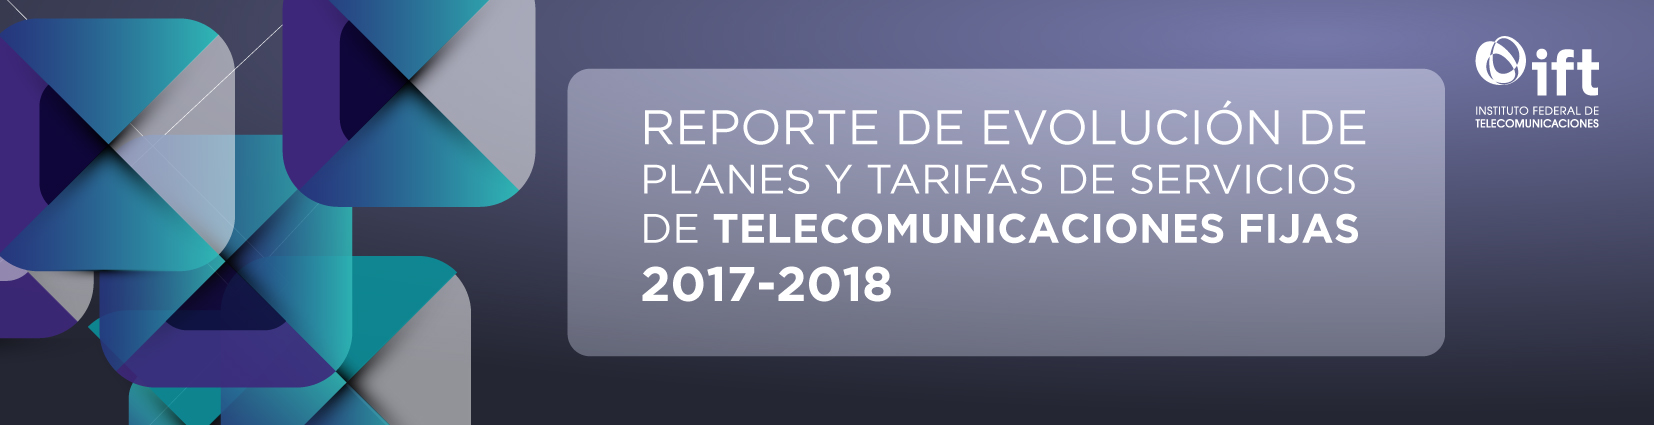 Reporte de Evolución de Planes y tarifas de servicios de telecomunicaciones fijas, 2017-2018